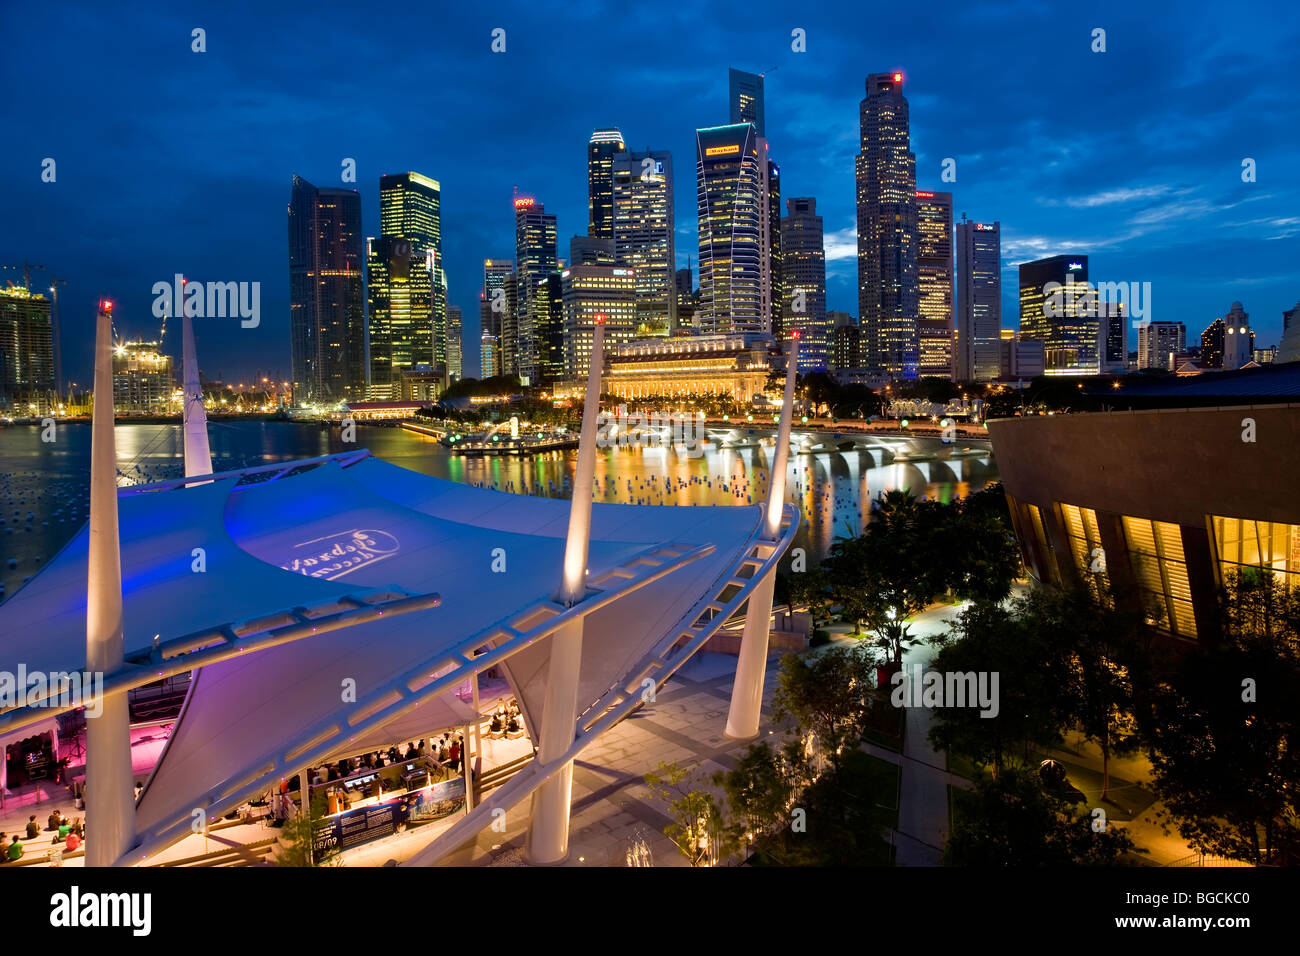 Vista de la ciudad al atardecer desde la azotea paseo de Esplanade Theatres on the Bay, Singapur. Foto de stock